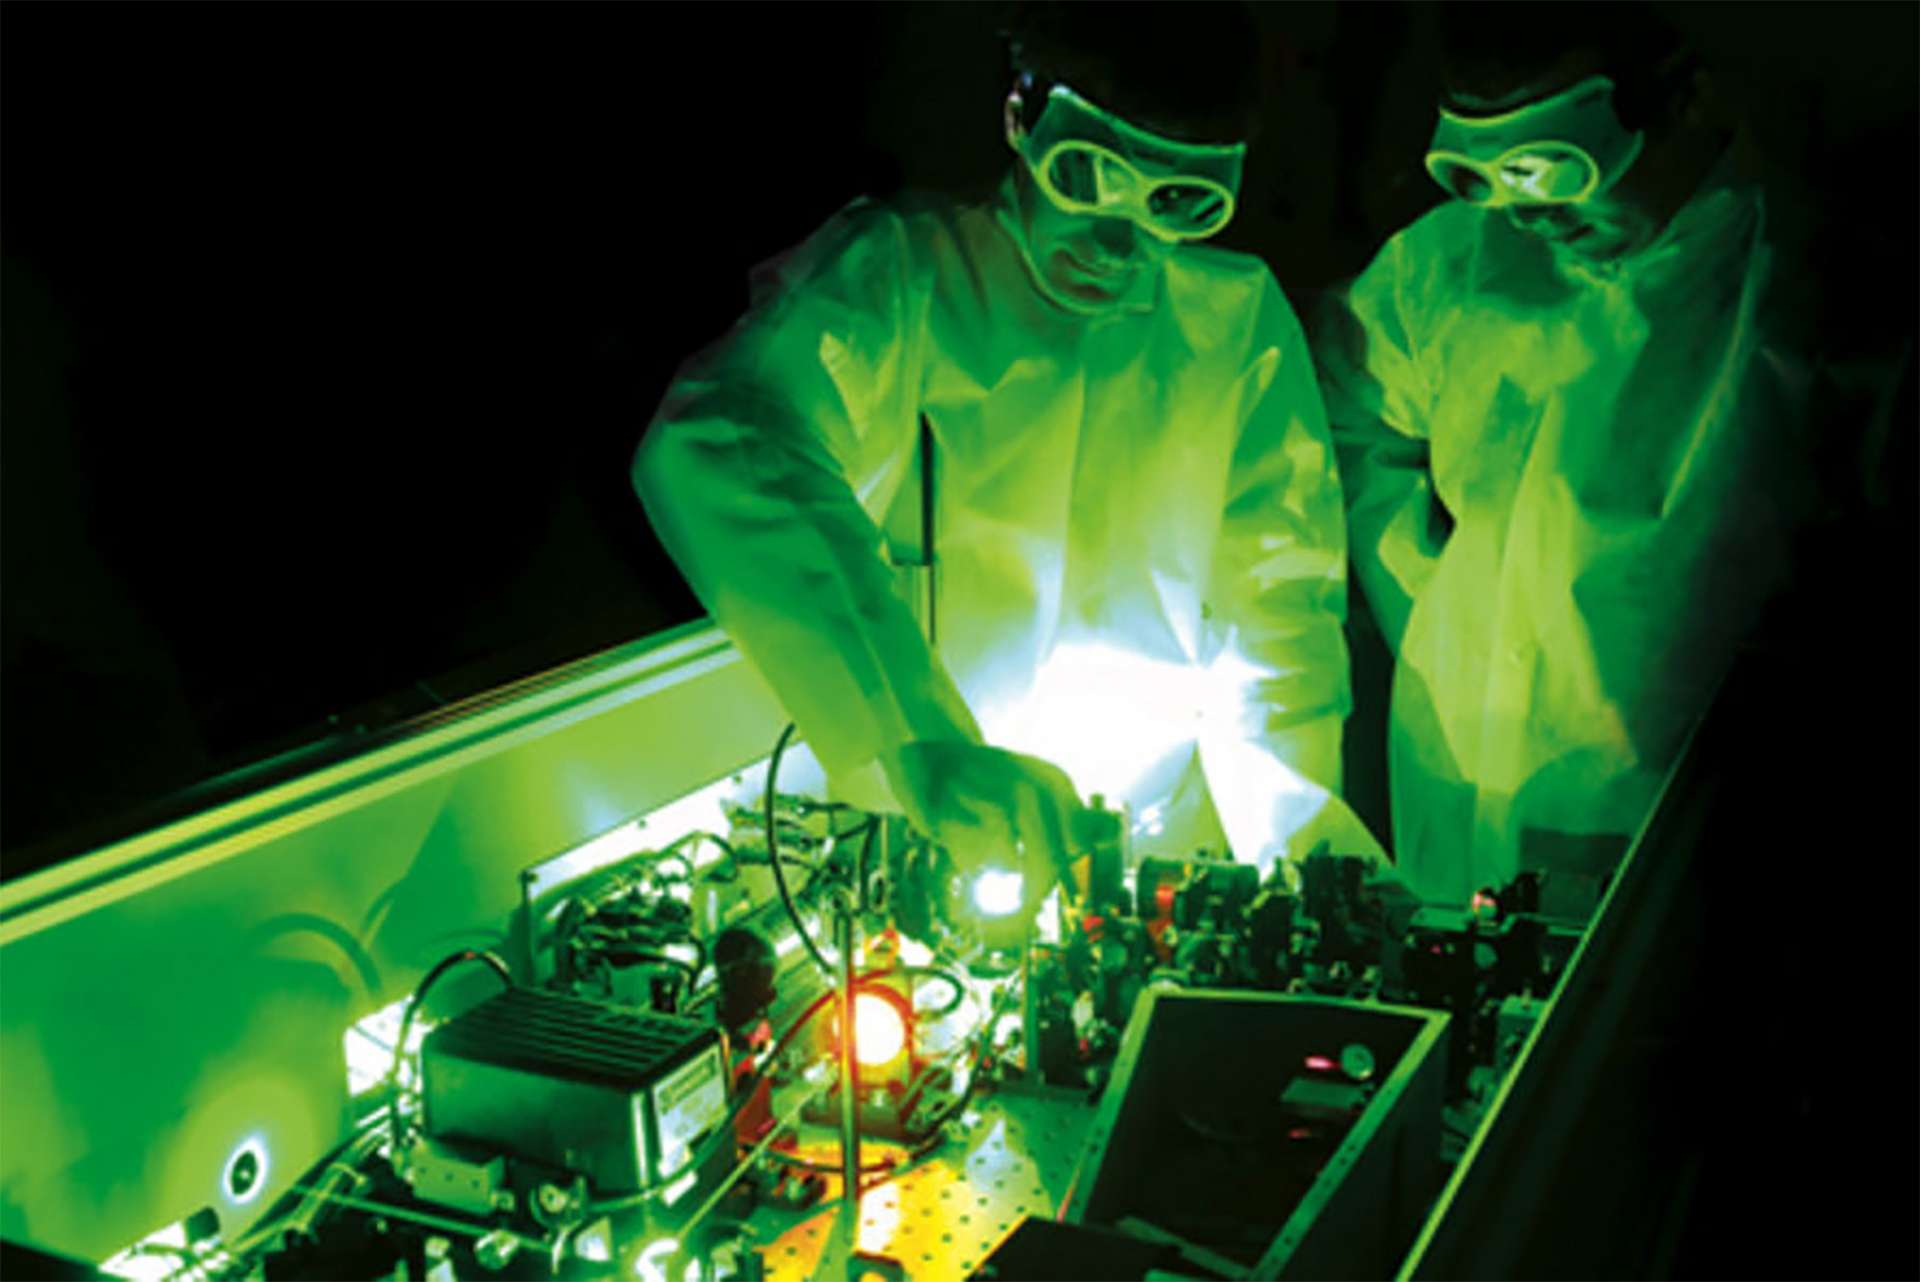 Le laser le plus puissant au monde vient d'être inauguré - Science et vie